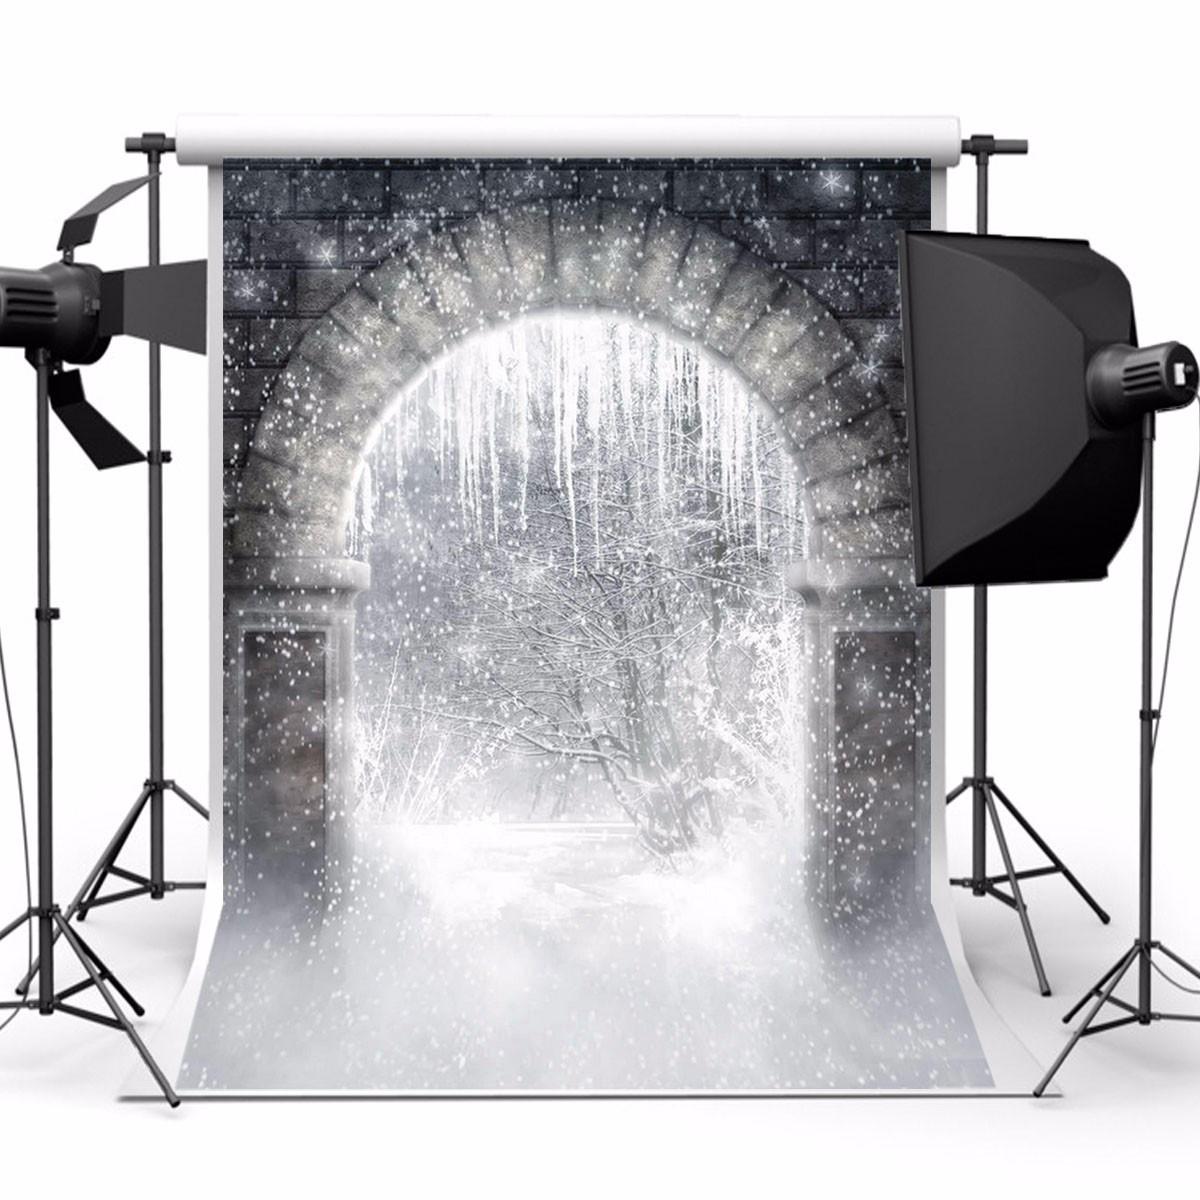 

Снежный лес Archway Волшебный Всемирная тематическая фотография Виниловый фон Studio Background 2.1mx 1.5m